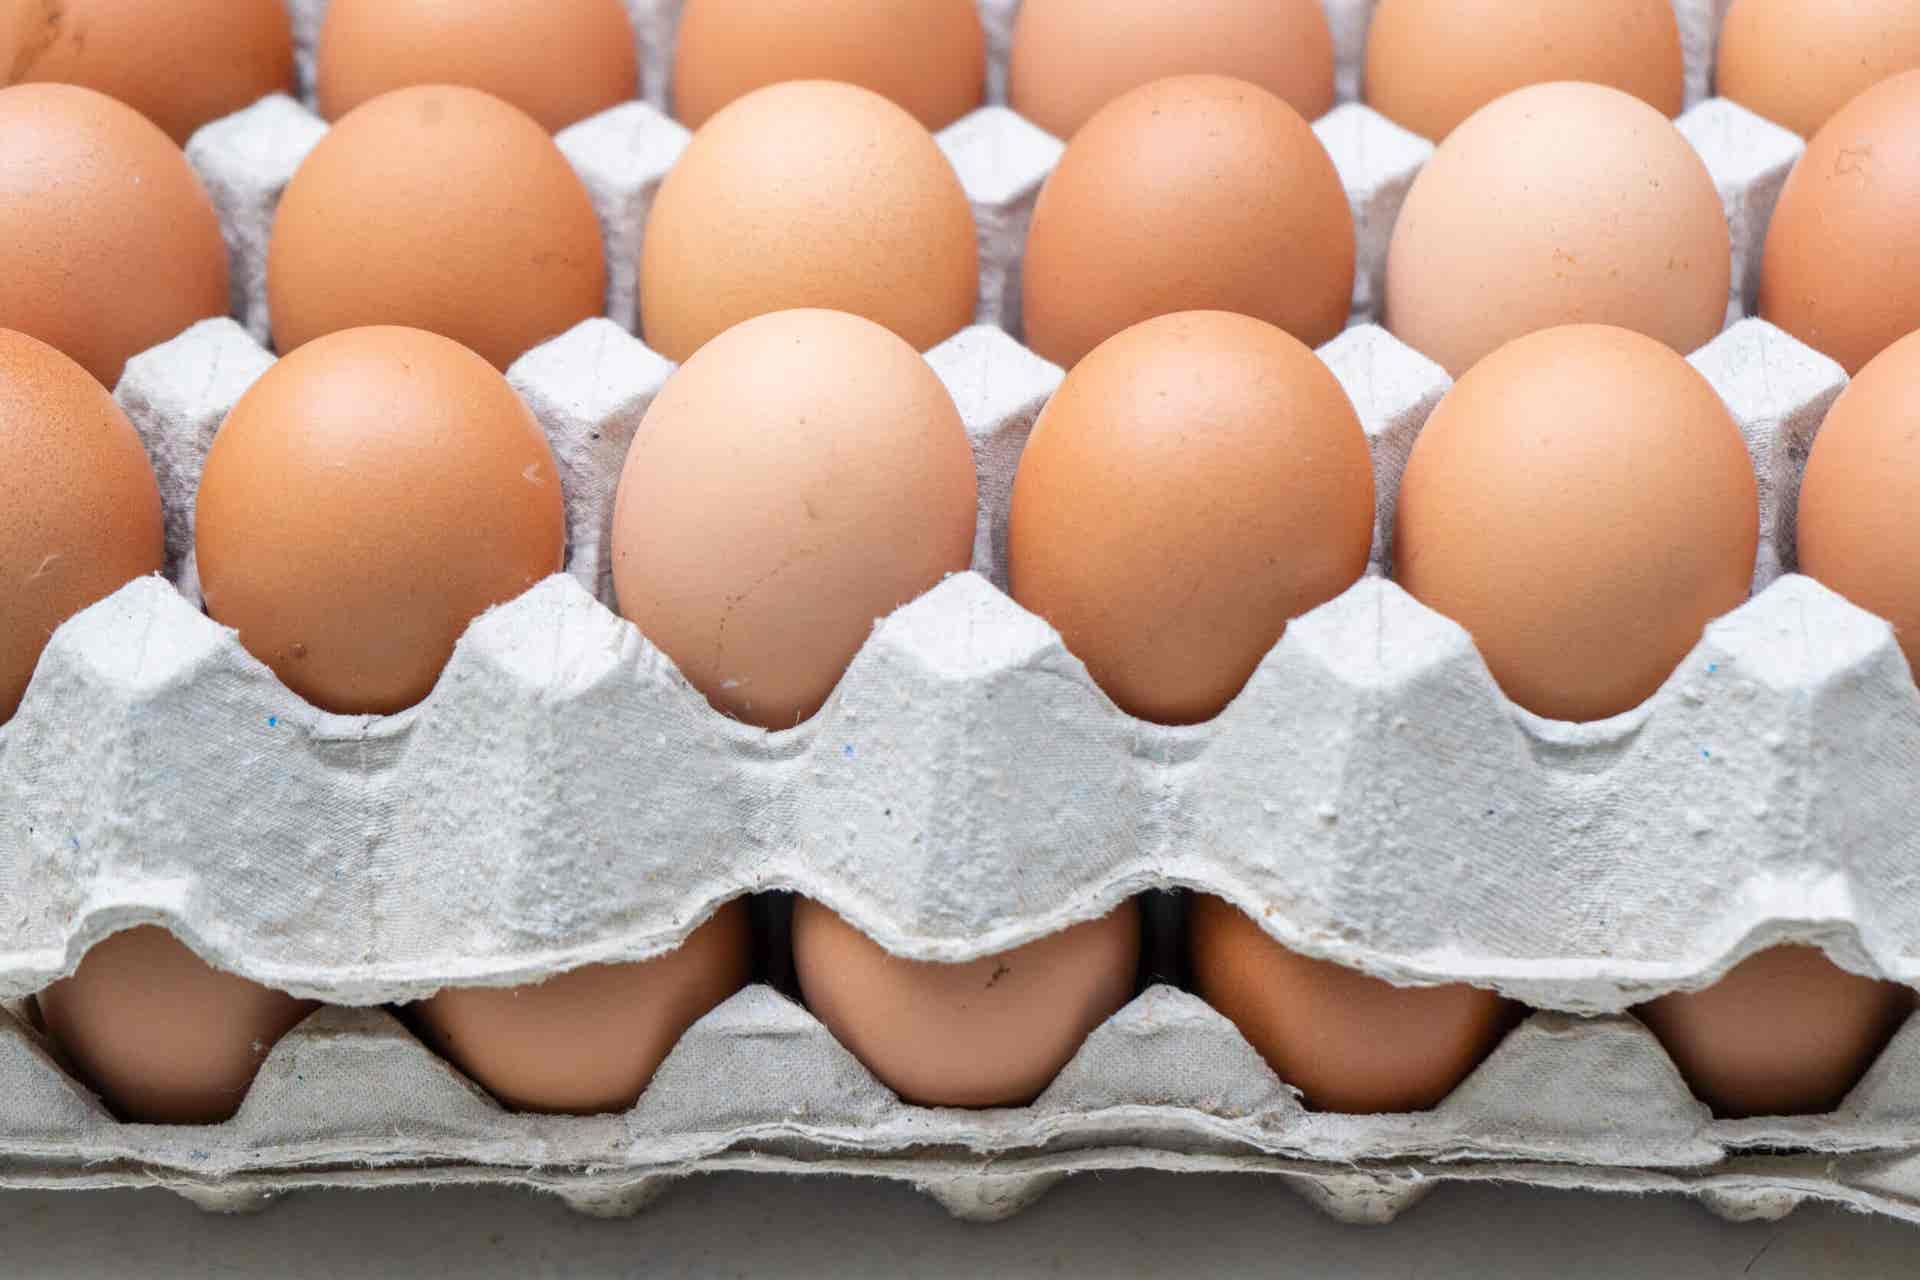 Al dejar de comer carne se pueden comer huevos.